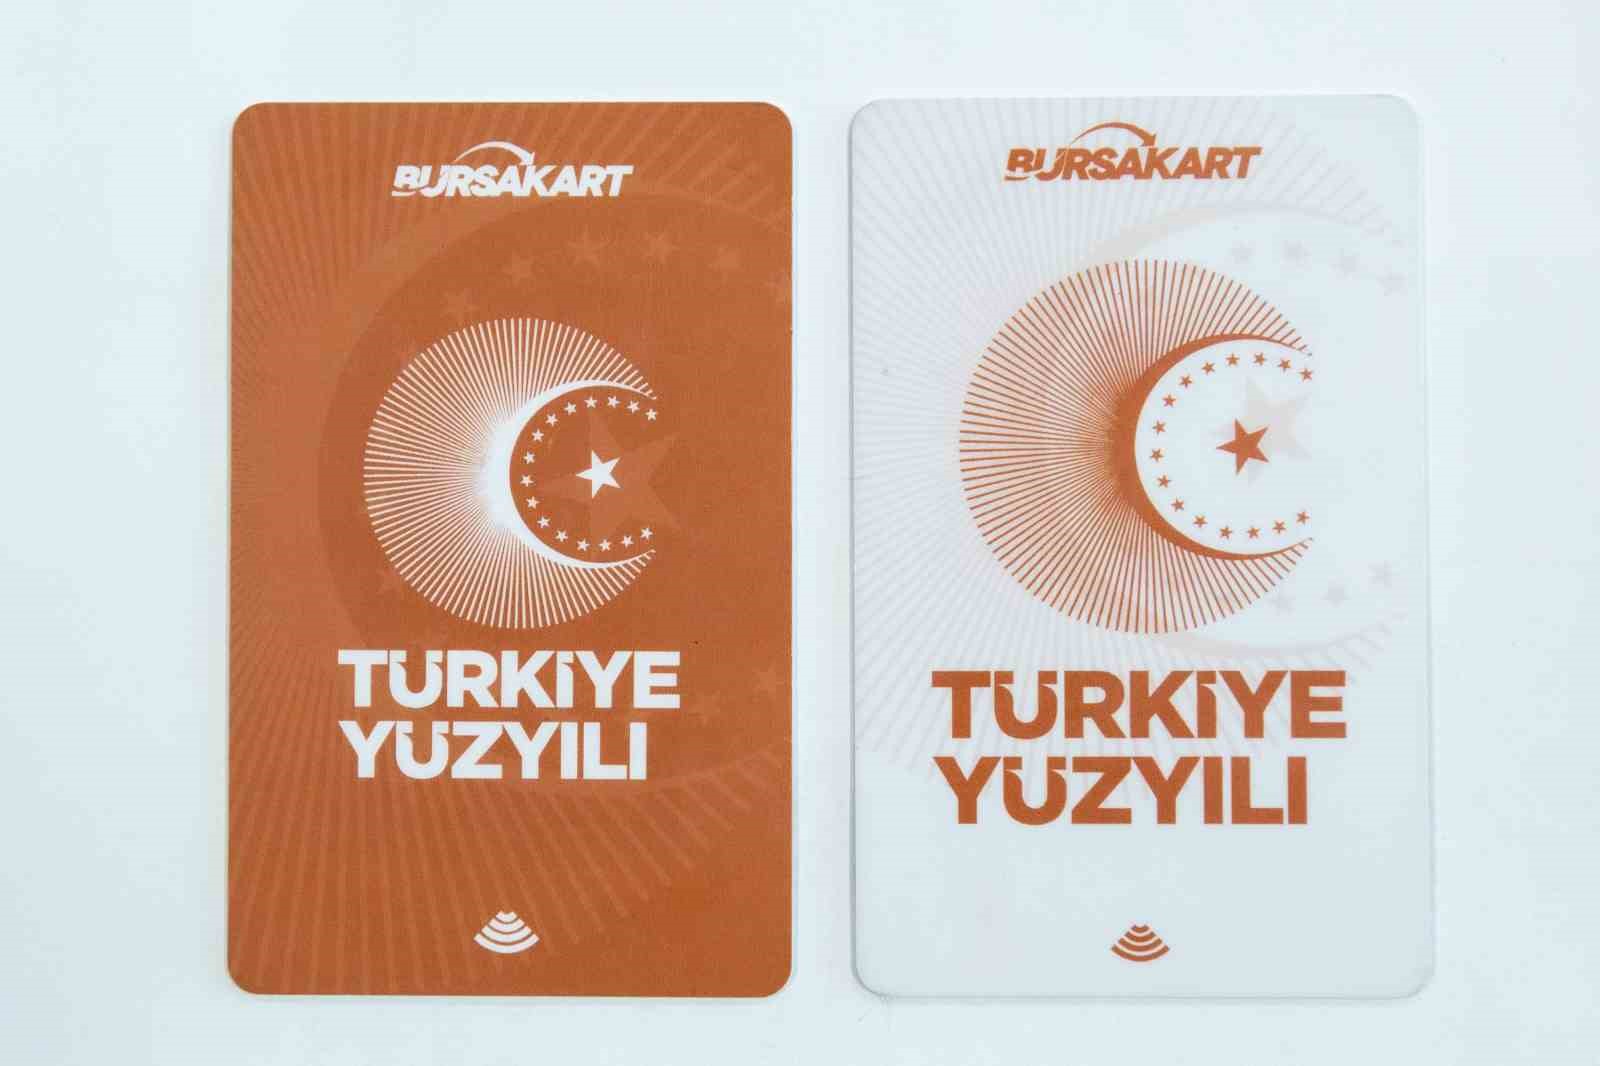 Bursa’da Cumhuriyet’e özel Bursakart piyasaya sürüldü